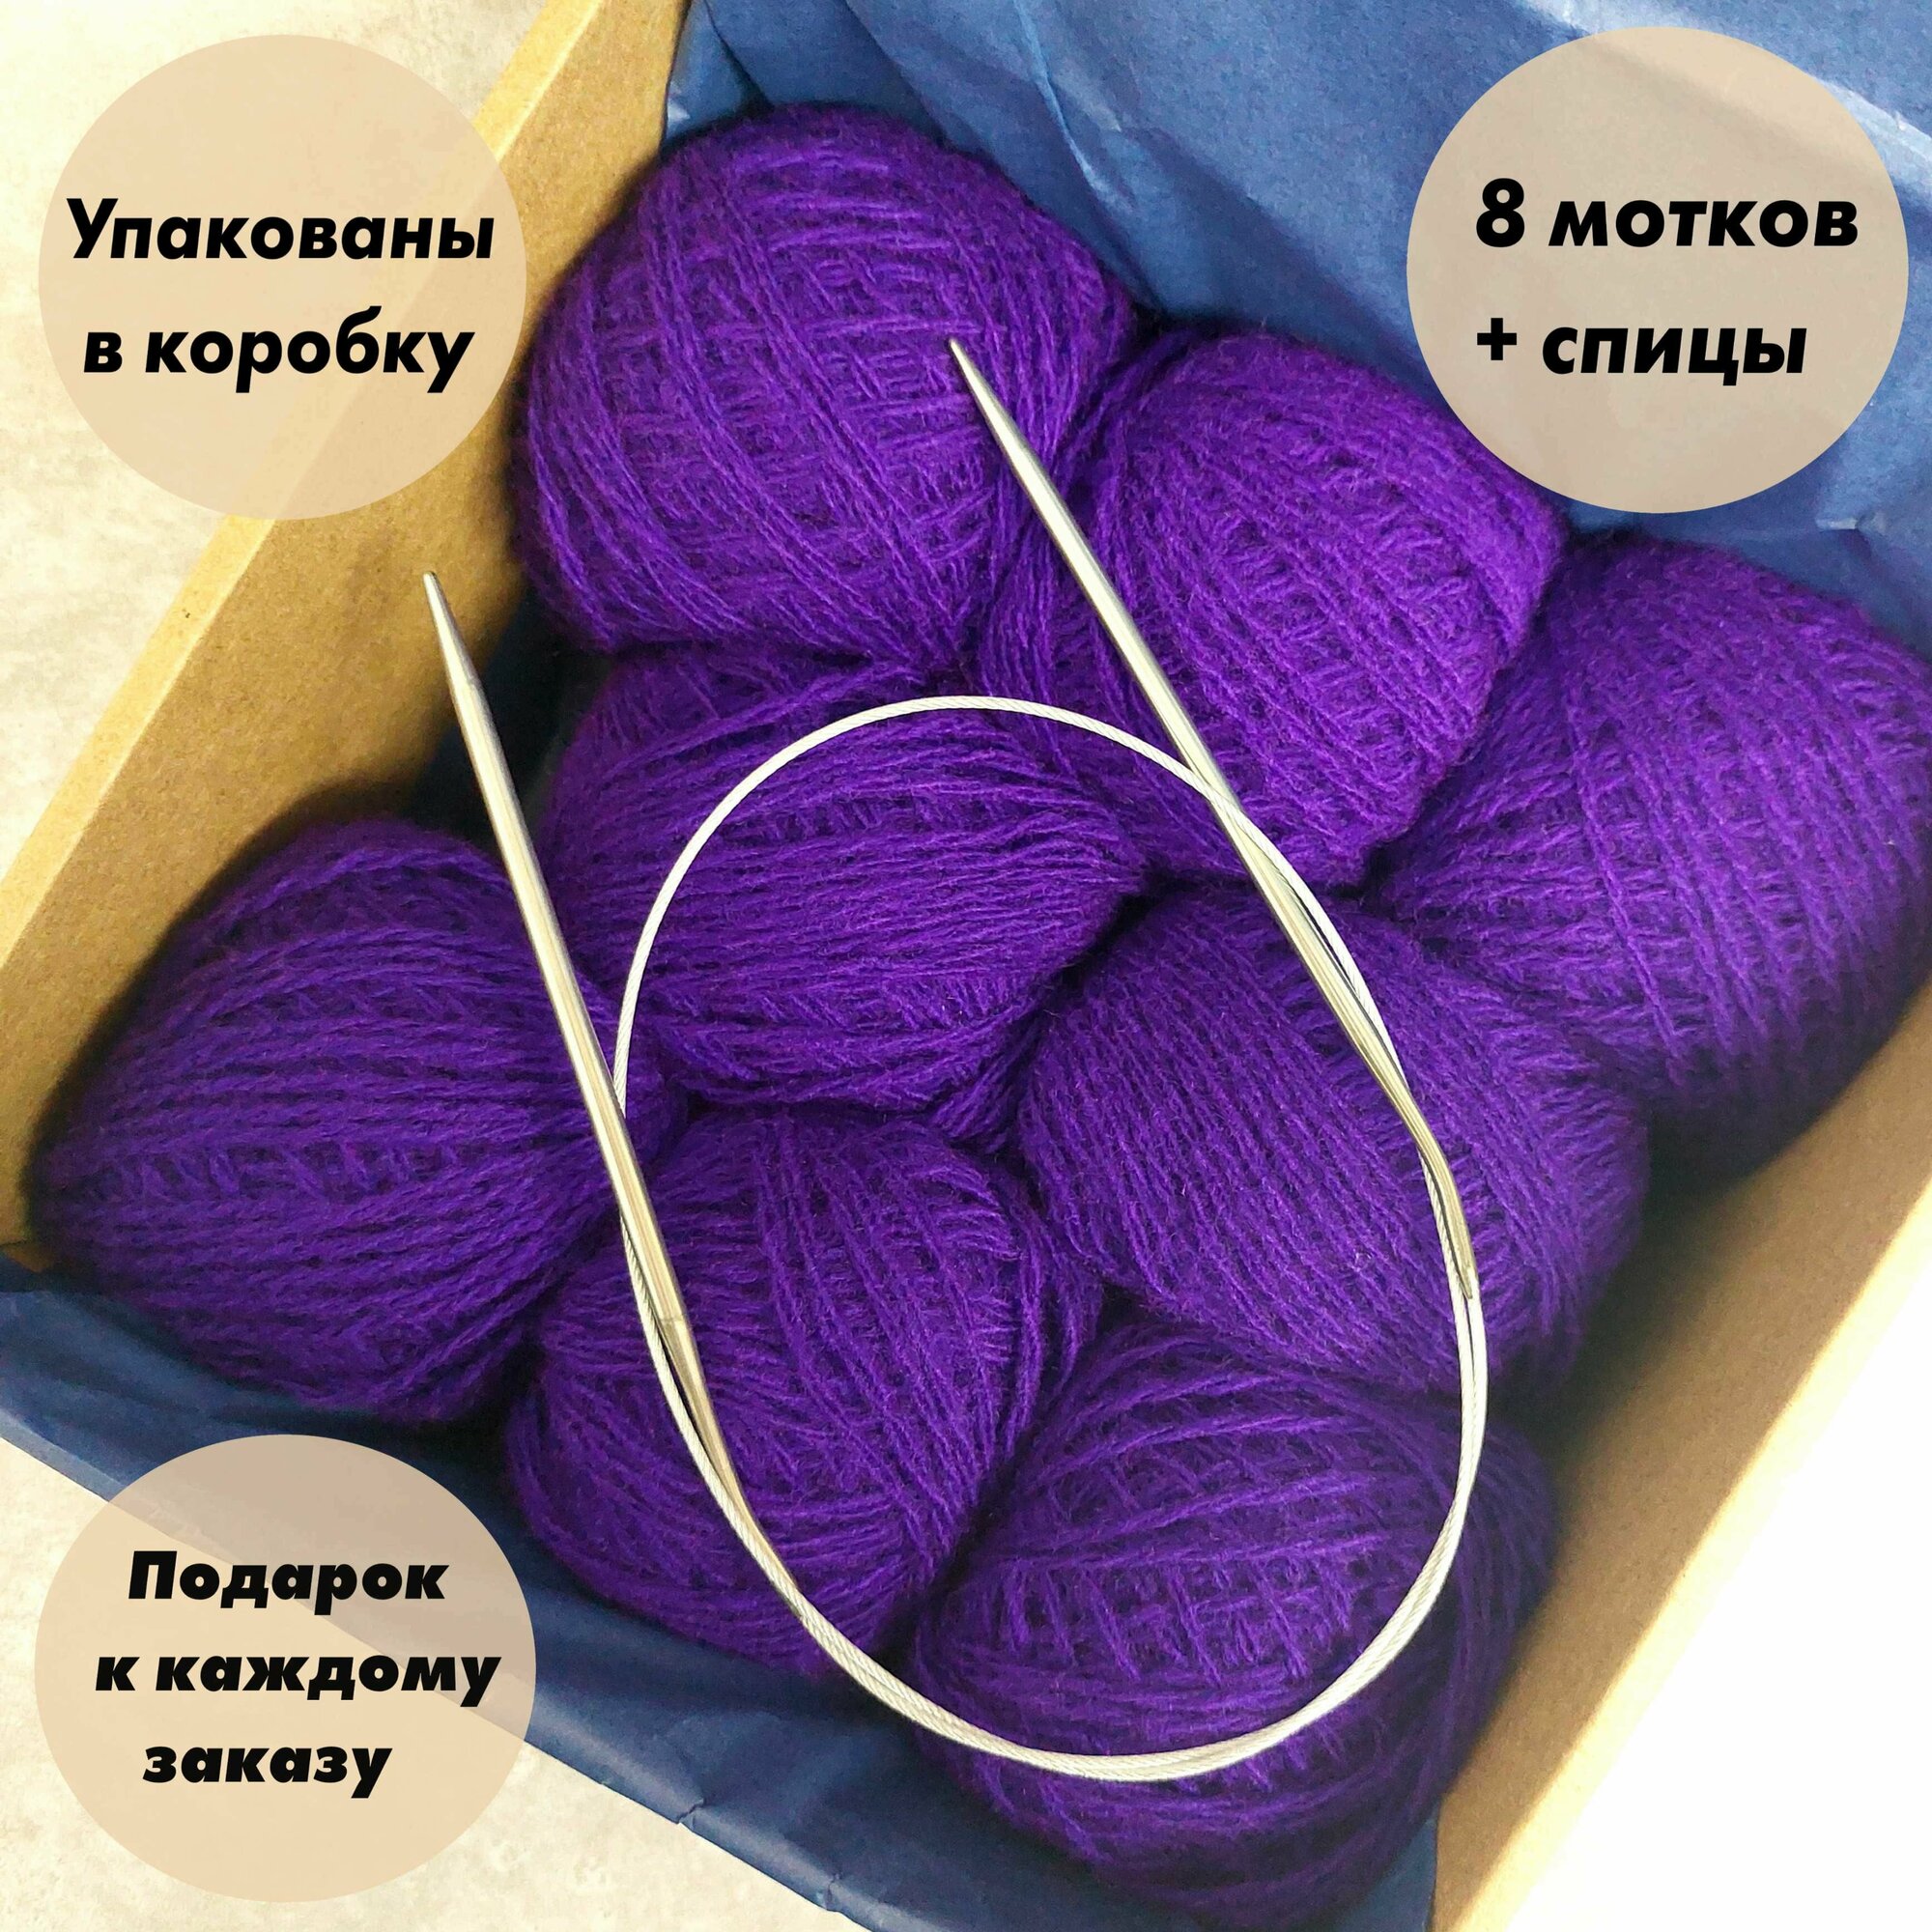 Пряжа для вязания игрушек пледов одежды в коробке + Спицы. Цвет: Темно-фиолетовый 8 мотков по 40 гр акрил 100%